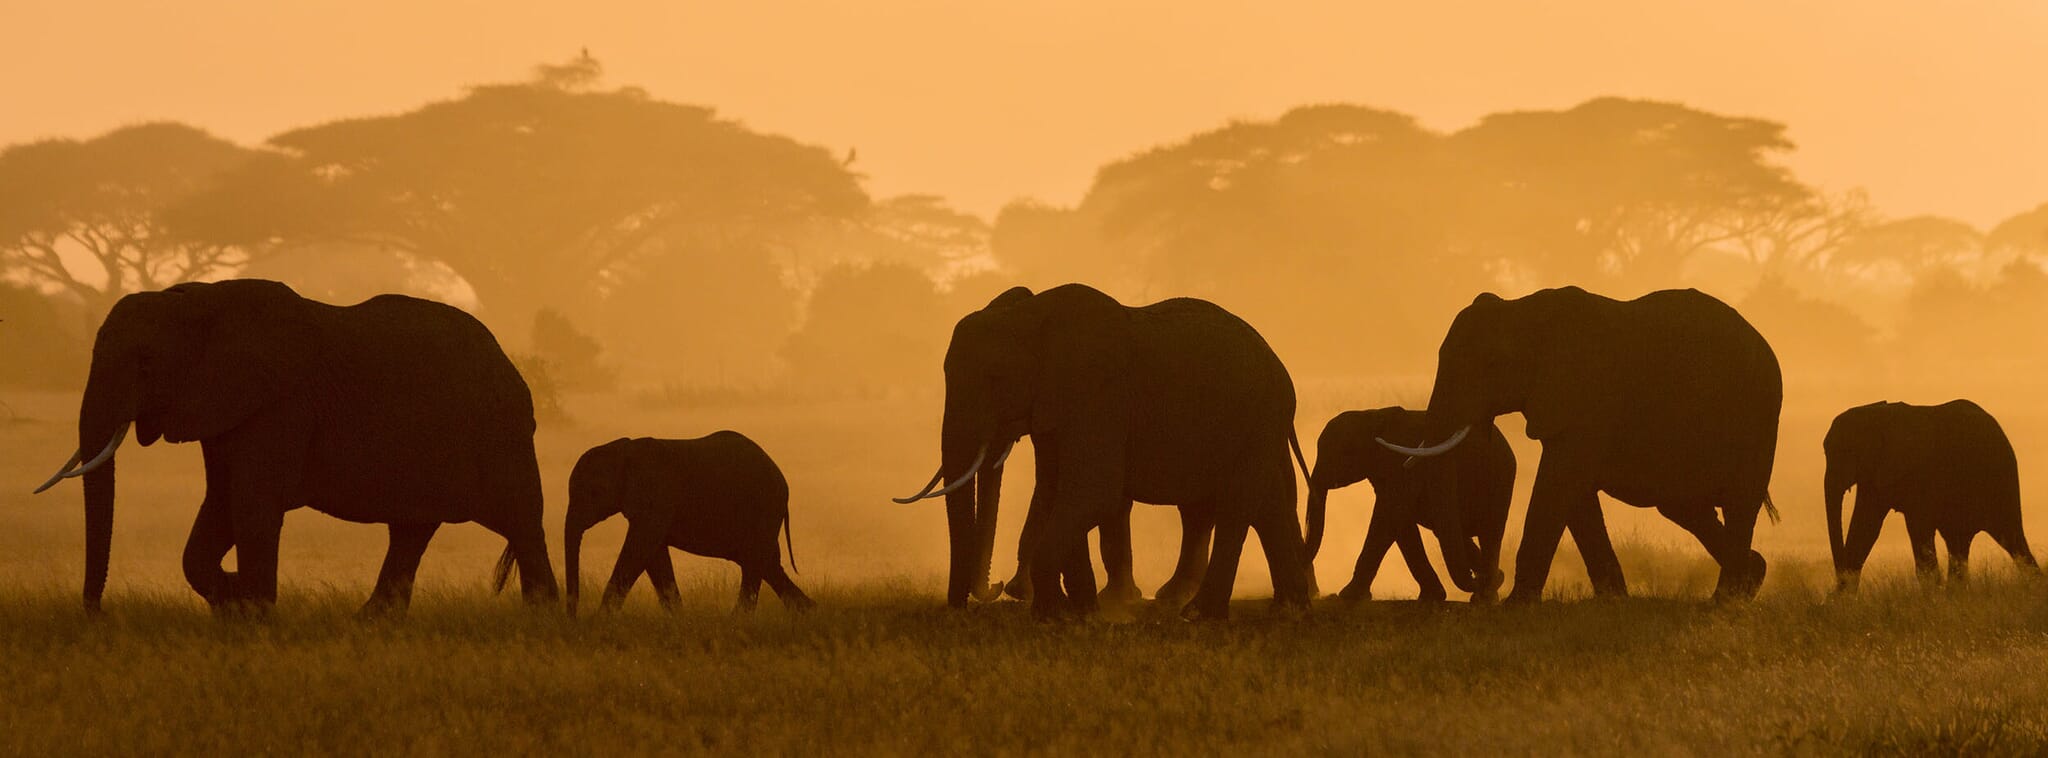 Tanzania regions to visit elephants family safari